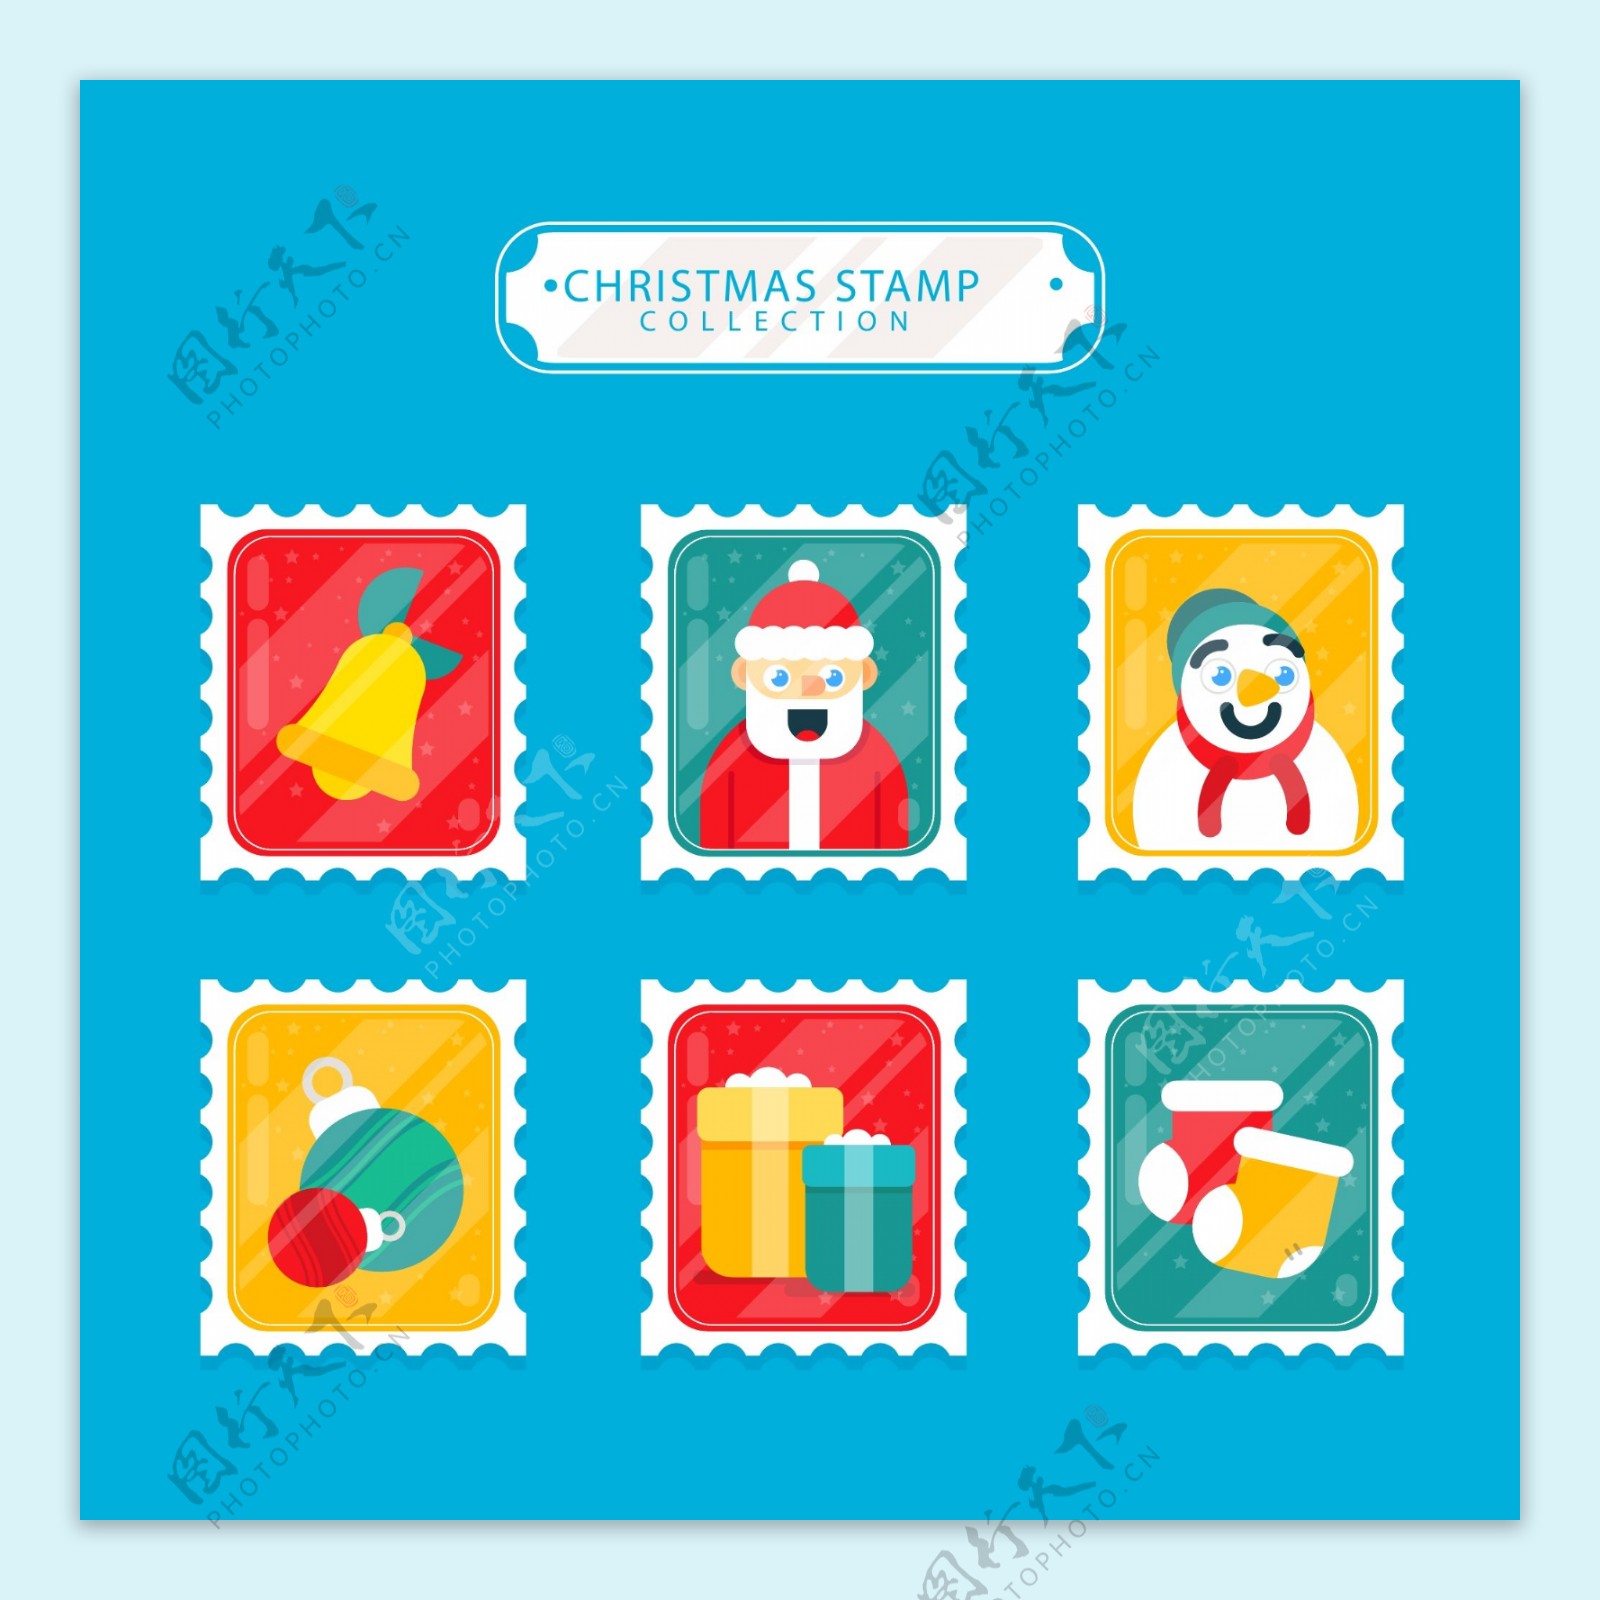 可爱的圣诞邮票标签素材